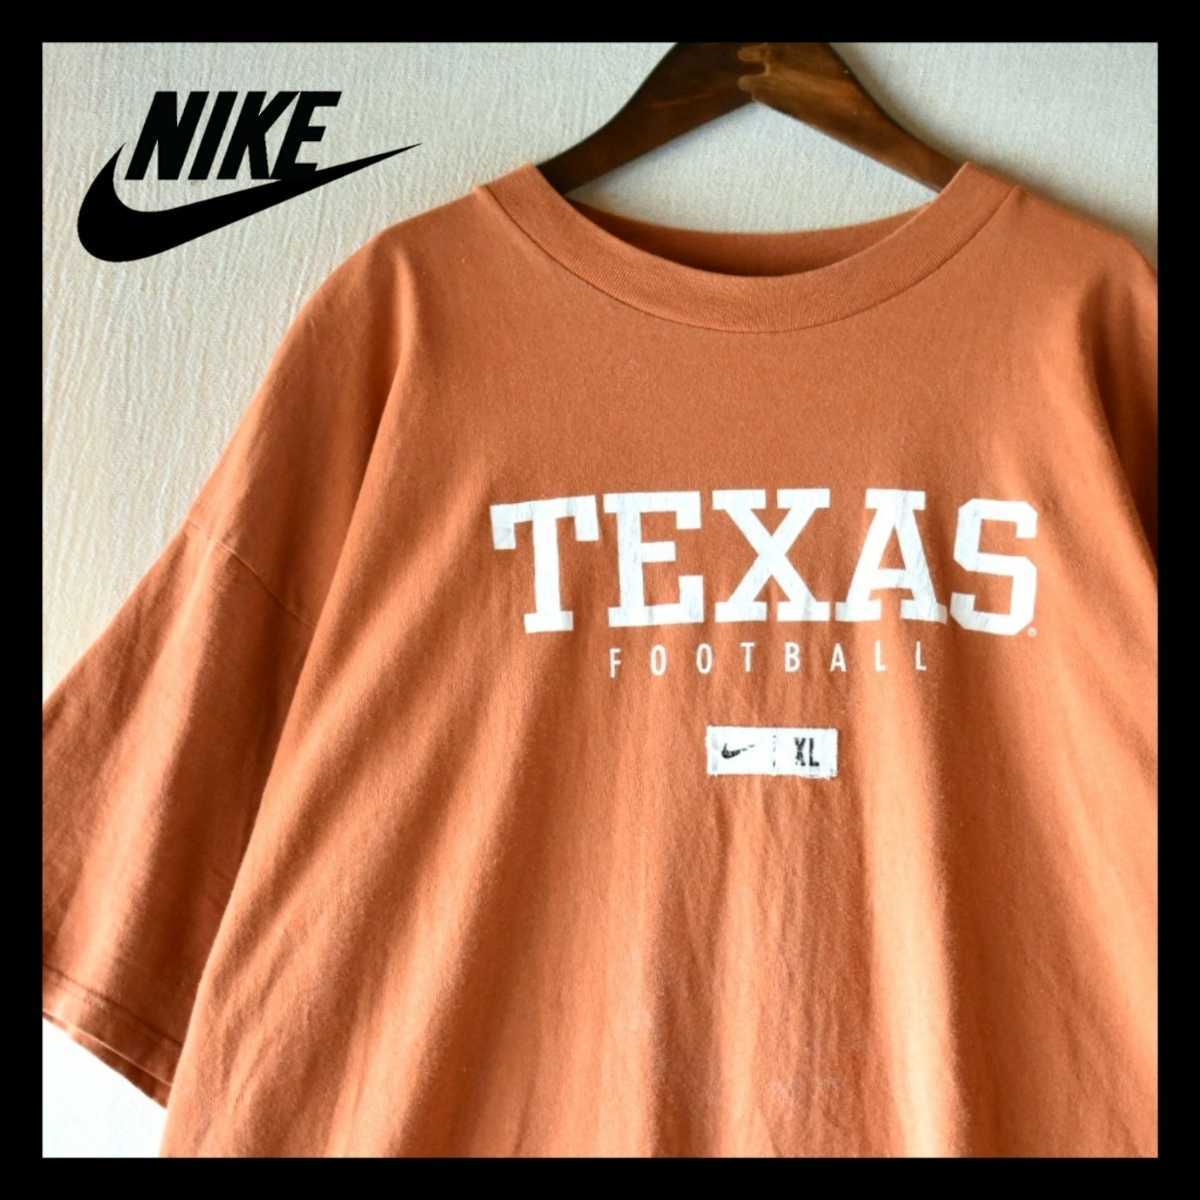 古着★NIKE ナイキ TEXASカレッジ スウォッシュロゴ 朱色Tシャツ オレンジブラウン メキシコ製90年代ストリート スポーツブランド XLサイズ